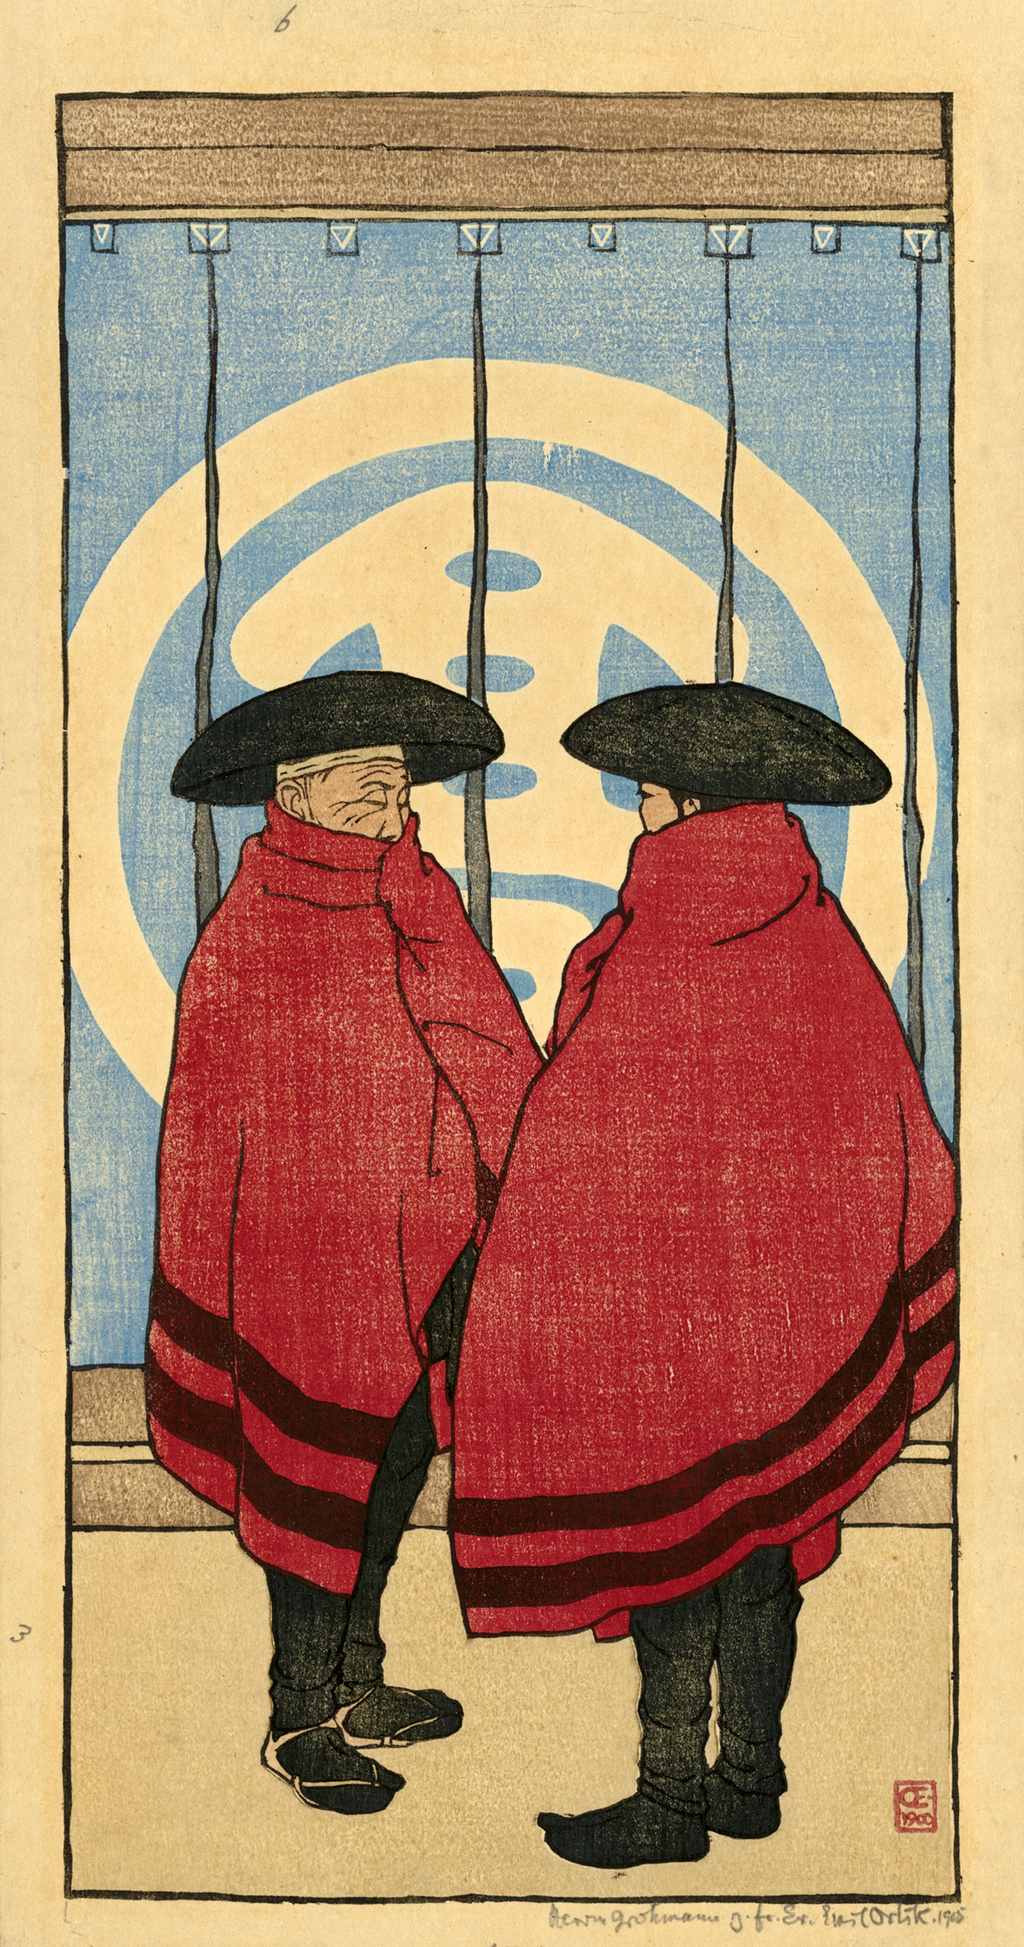 Rysunek dwóch osób w czerwonych pelerynach i czarnych nakryciach głowy